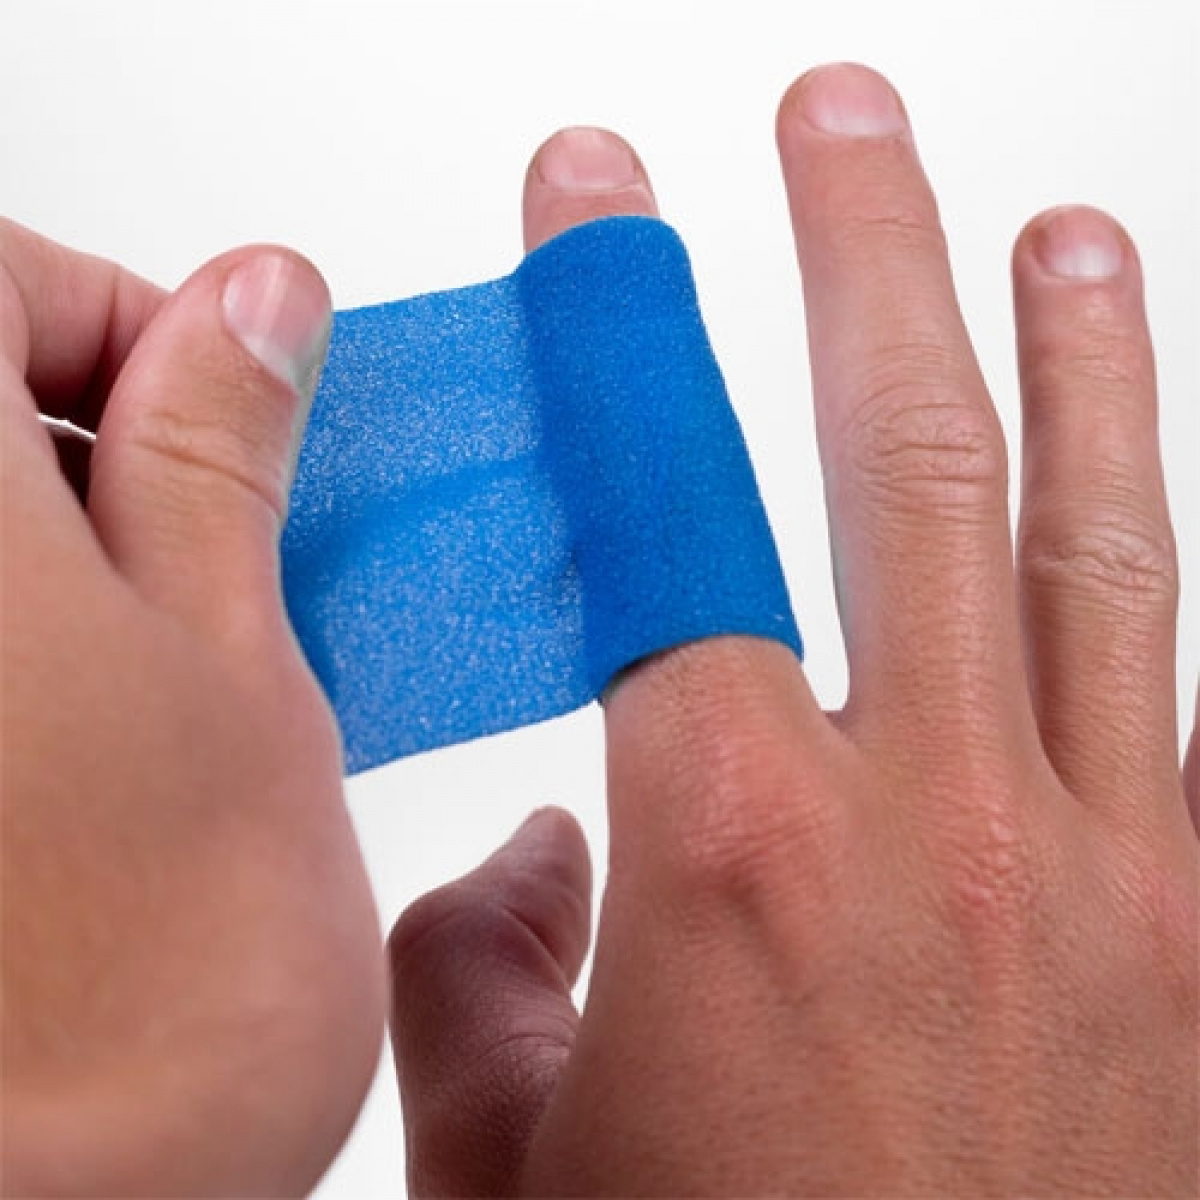 Pro Flex bandageplaster i gruppen Øvrigt / Sikkerhed / Øvrigt hos Campmarket (72300)